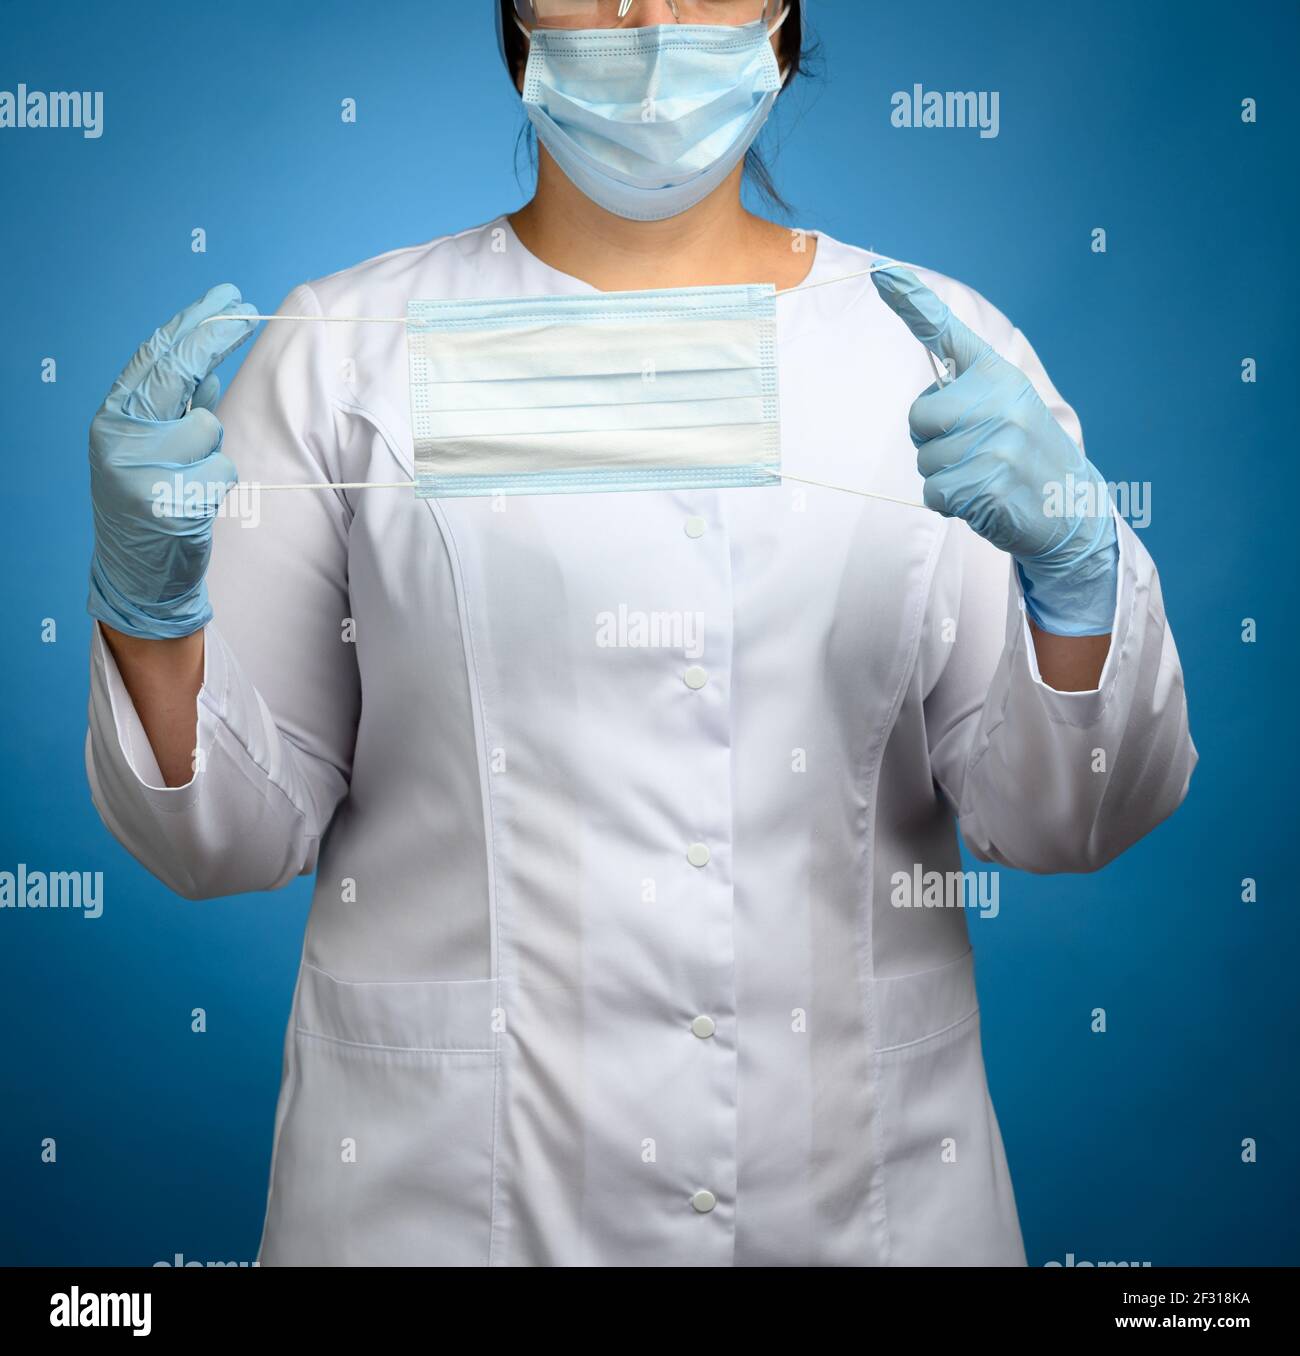 Femme médecin dans un manteau médical blanc, un masque jetable, des lunettes de protection en plastique et une casquette se tient sur un fond bleu et ho Banque D'Images